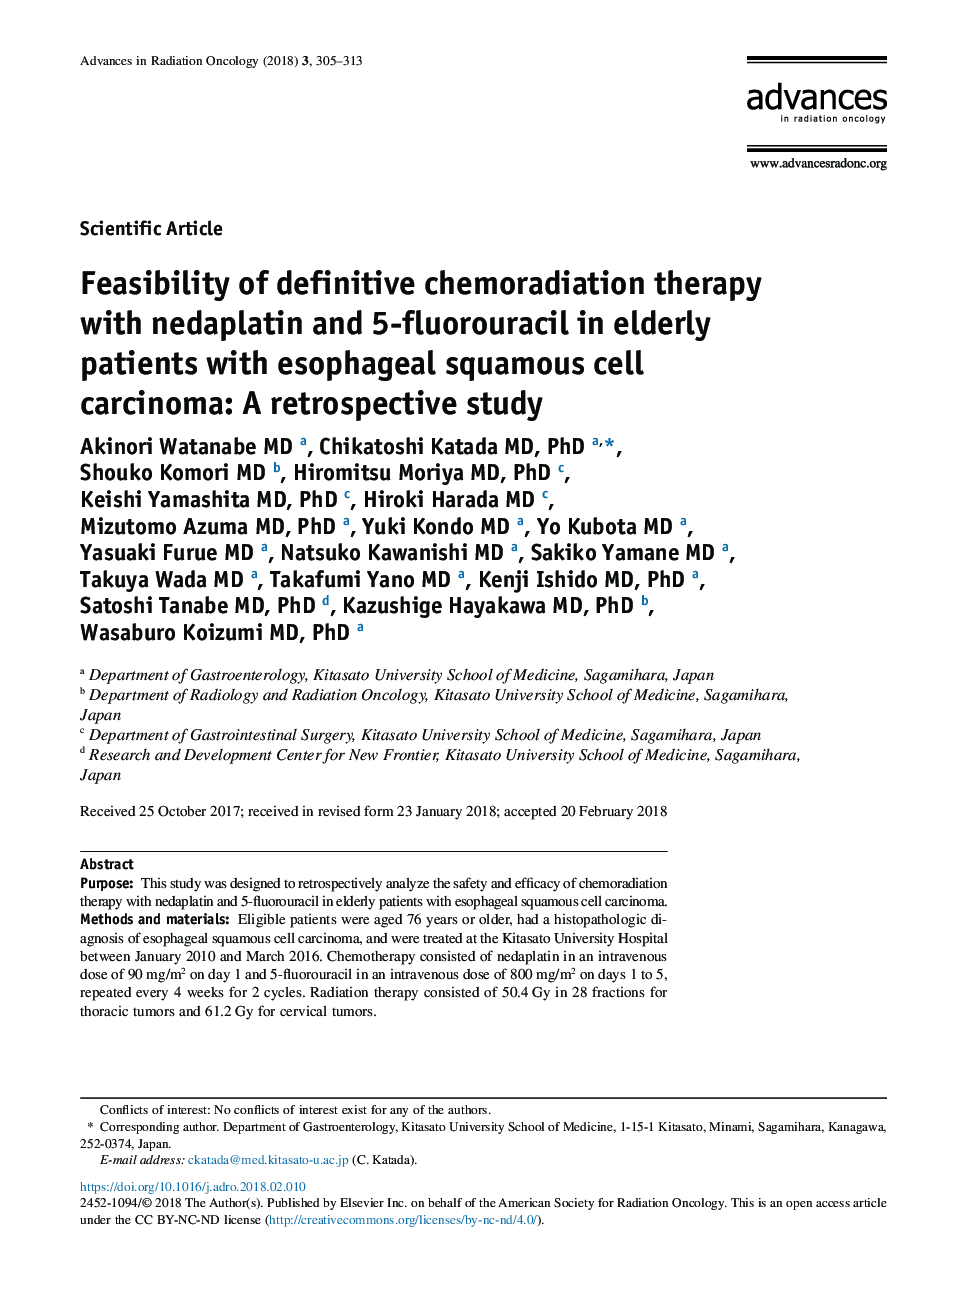 امکان درمان قطعی شیمی درمانی با داپلاتین و 5-فلوروورسیل در سالمندان مبتلا به کارسینوم سلول سنگفرشی مری: یک مطالعه گذشته نگری 